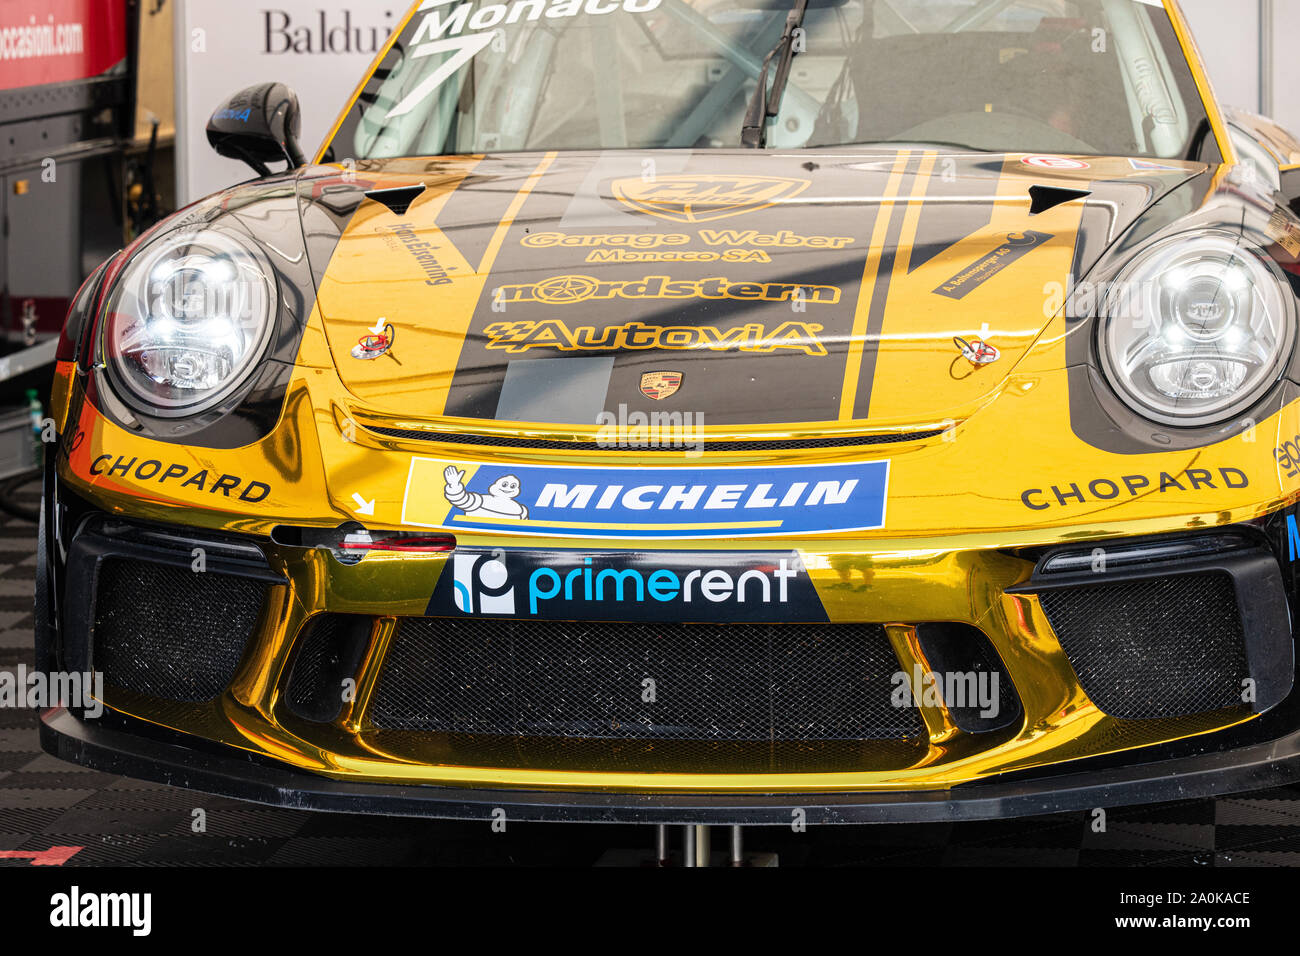 Vallelunga, en Italie le 14 septembre 2019, course Porsche Carrera voiture Vue de face en couleur or paddock close up pas de personnes Banque D'Images